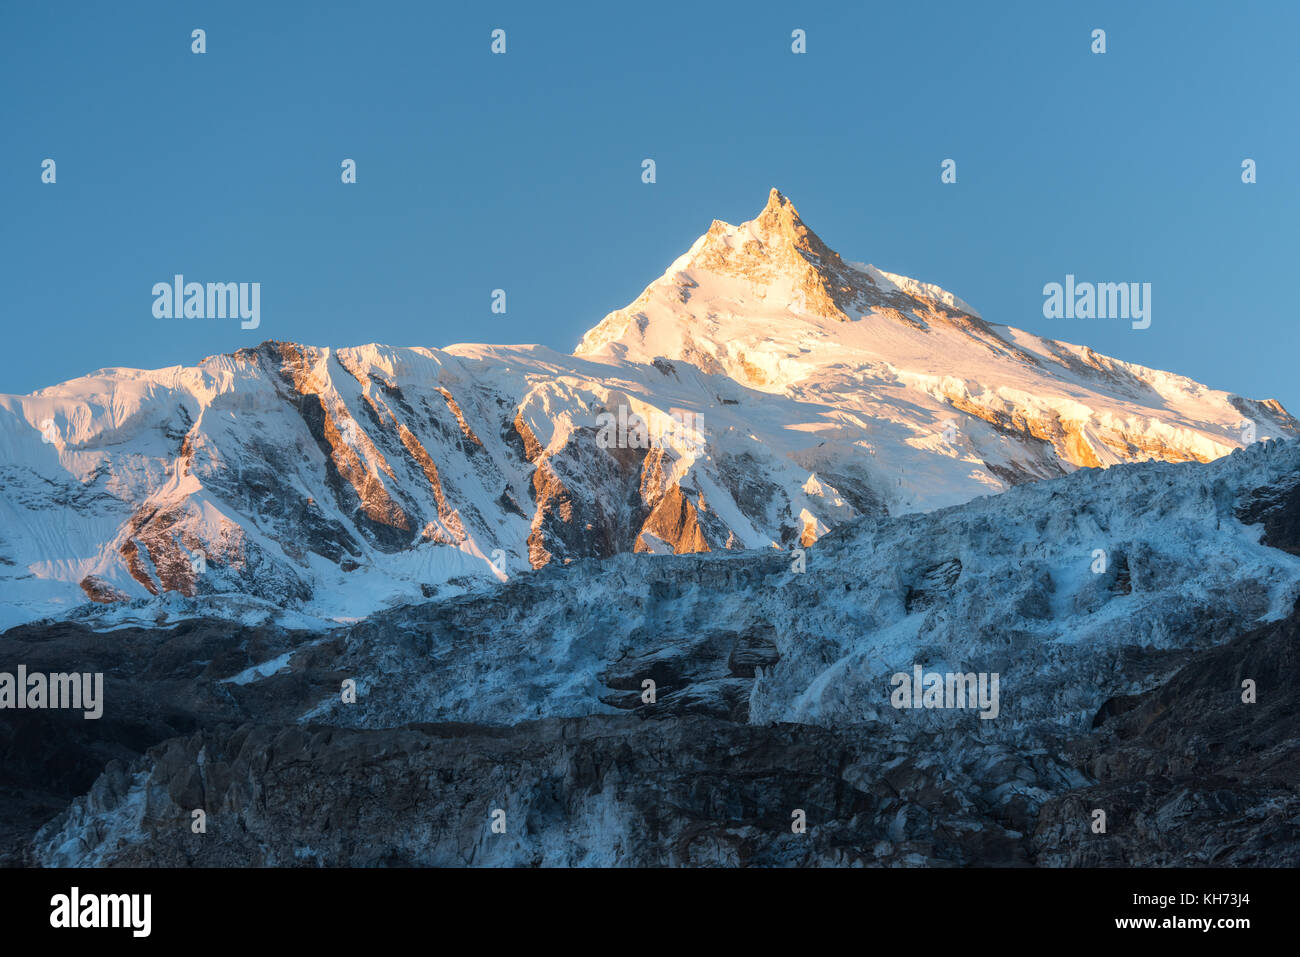 Belle vue sur la montagne couverte de neige colorés au lever du soleil au Népal. Paysage avec des sommets enneigés des montagnes de l'Himalaya, glacier et ciel bleu dans le m Banque D'Images